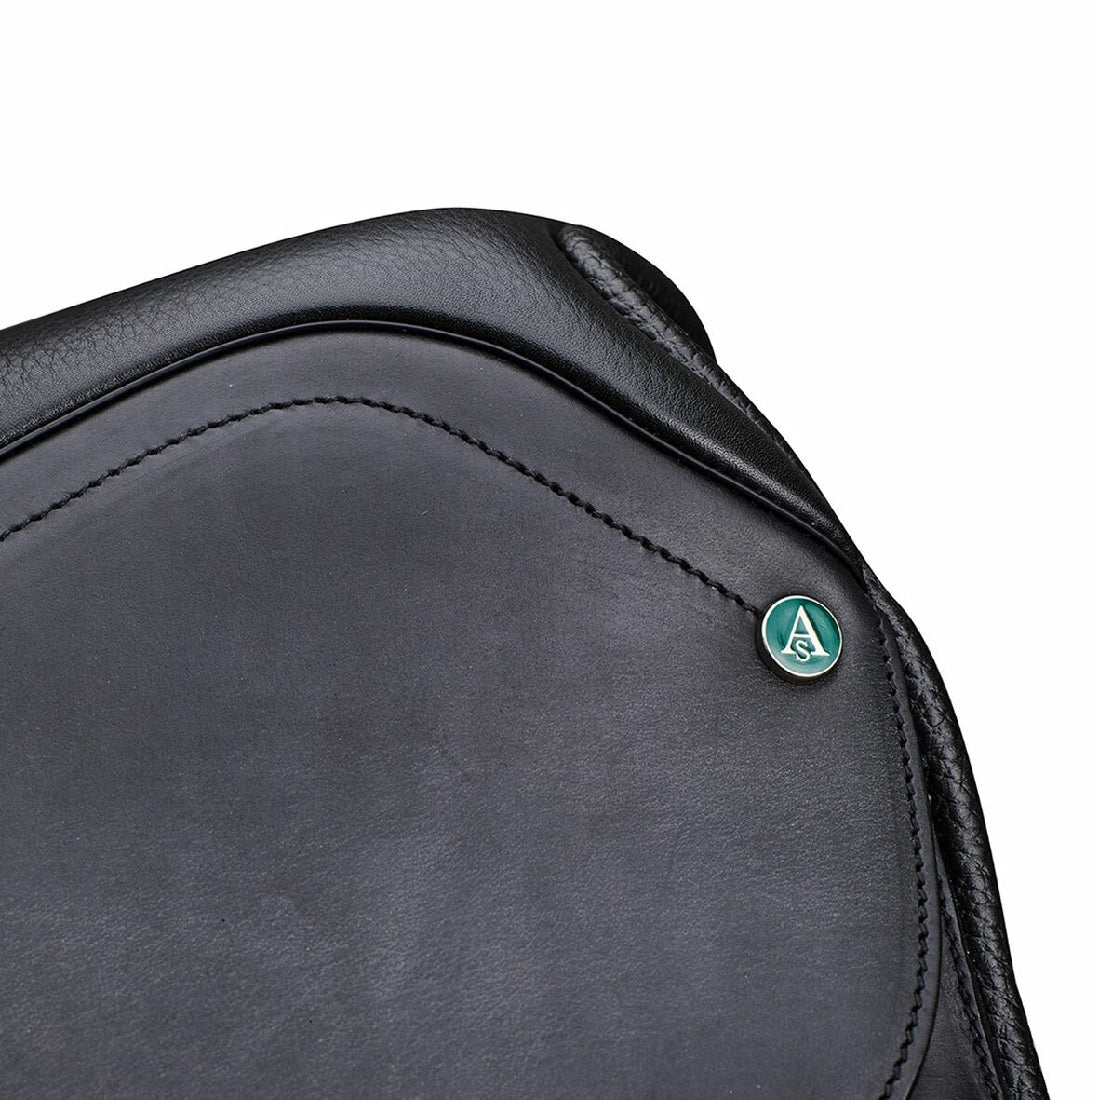 Close-up of Arena Saddles logo on black leather saddle.